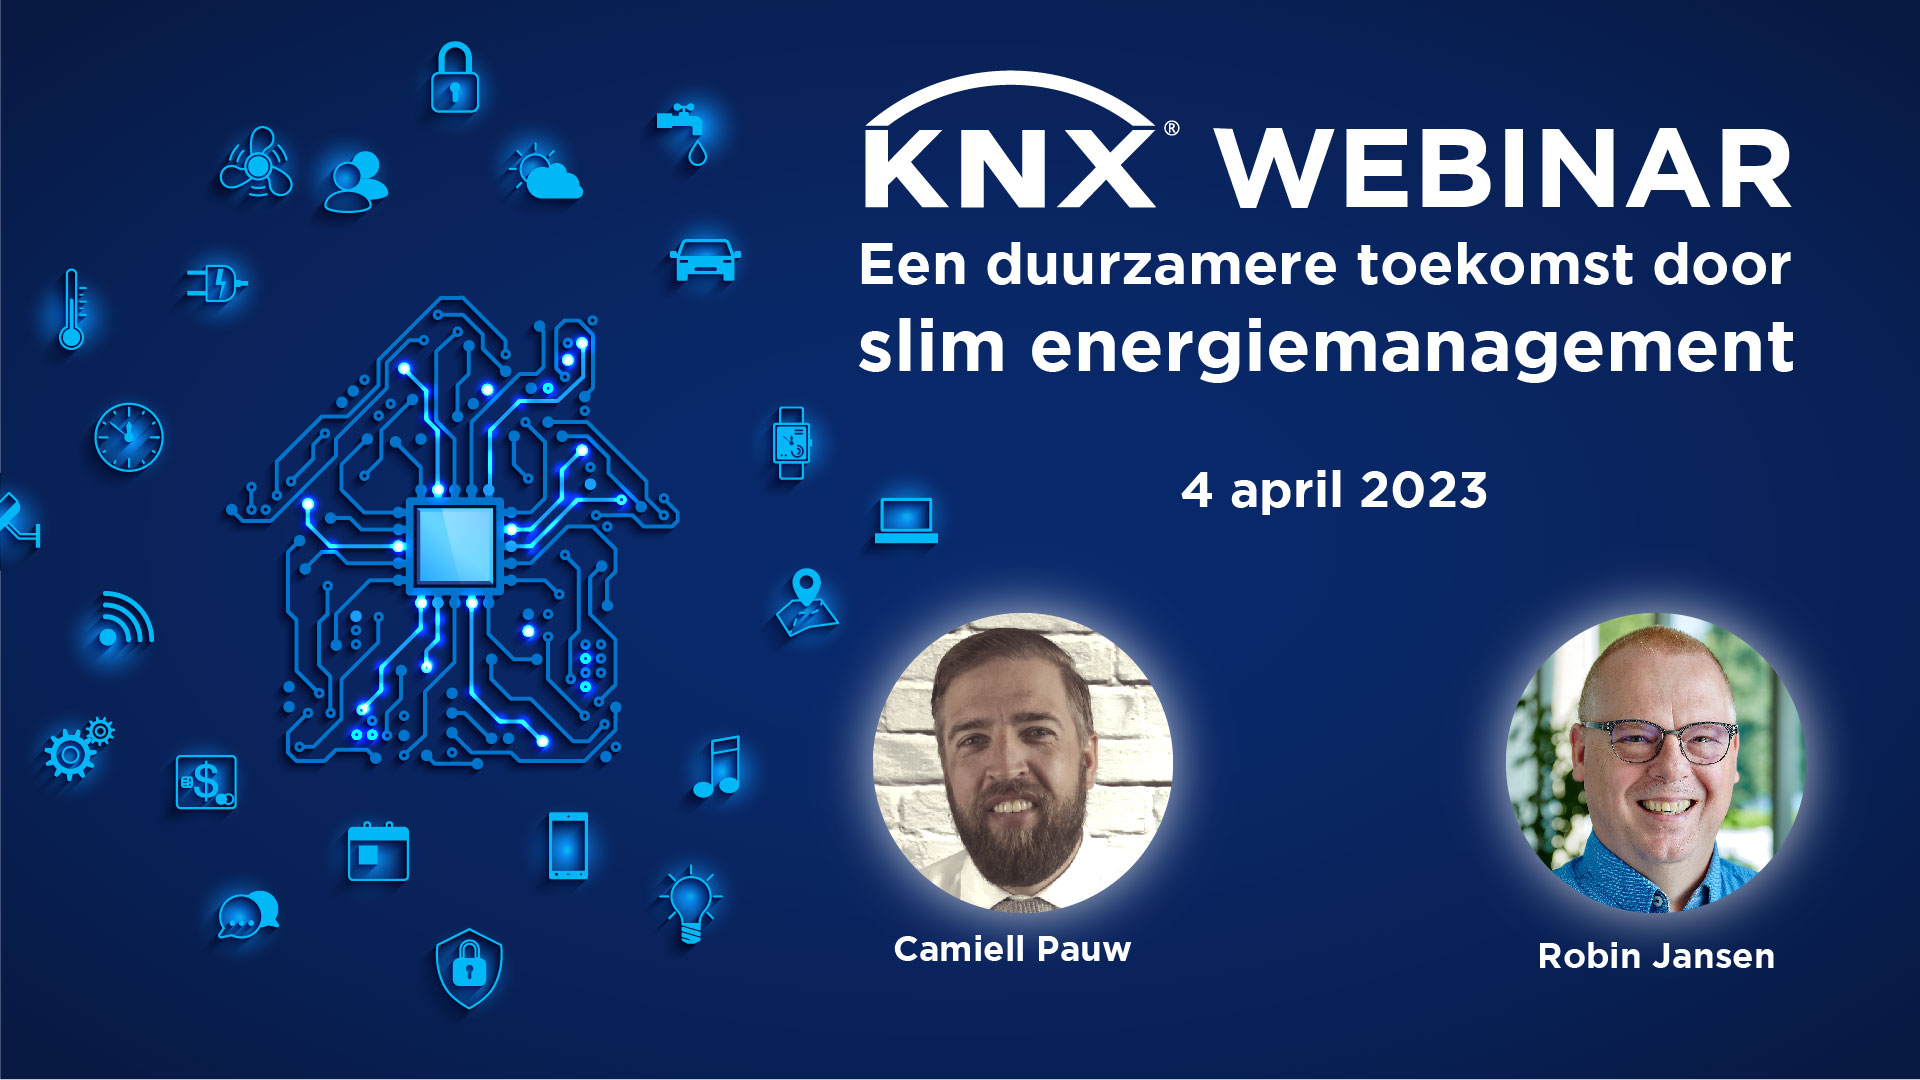 KNX Webinar: Een duurzamere toekomst door slim energiemanagement